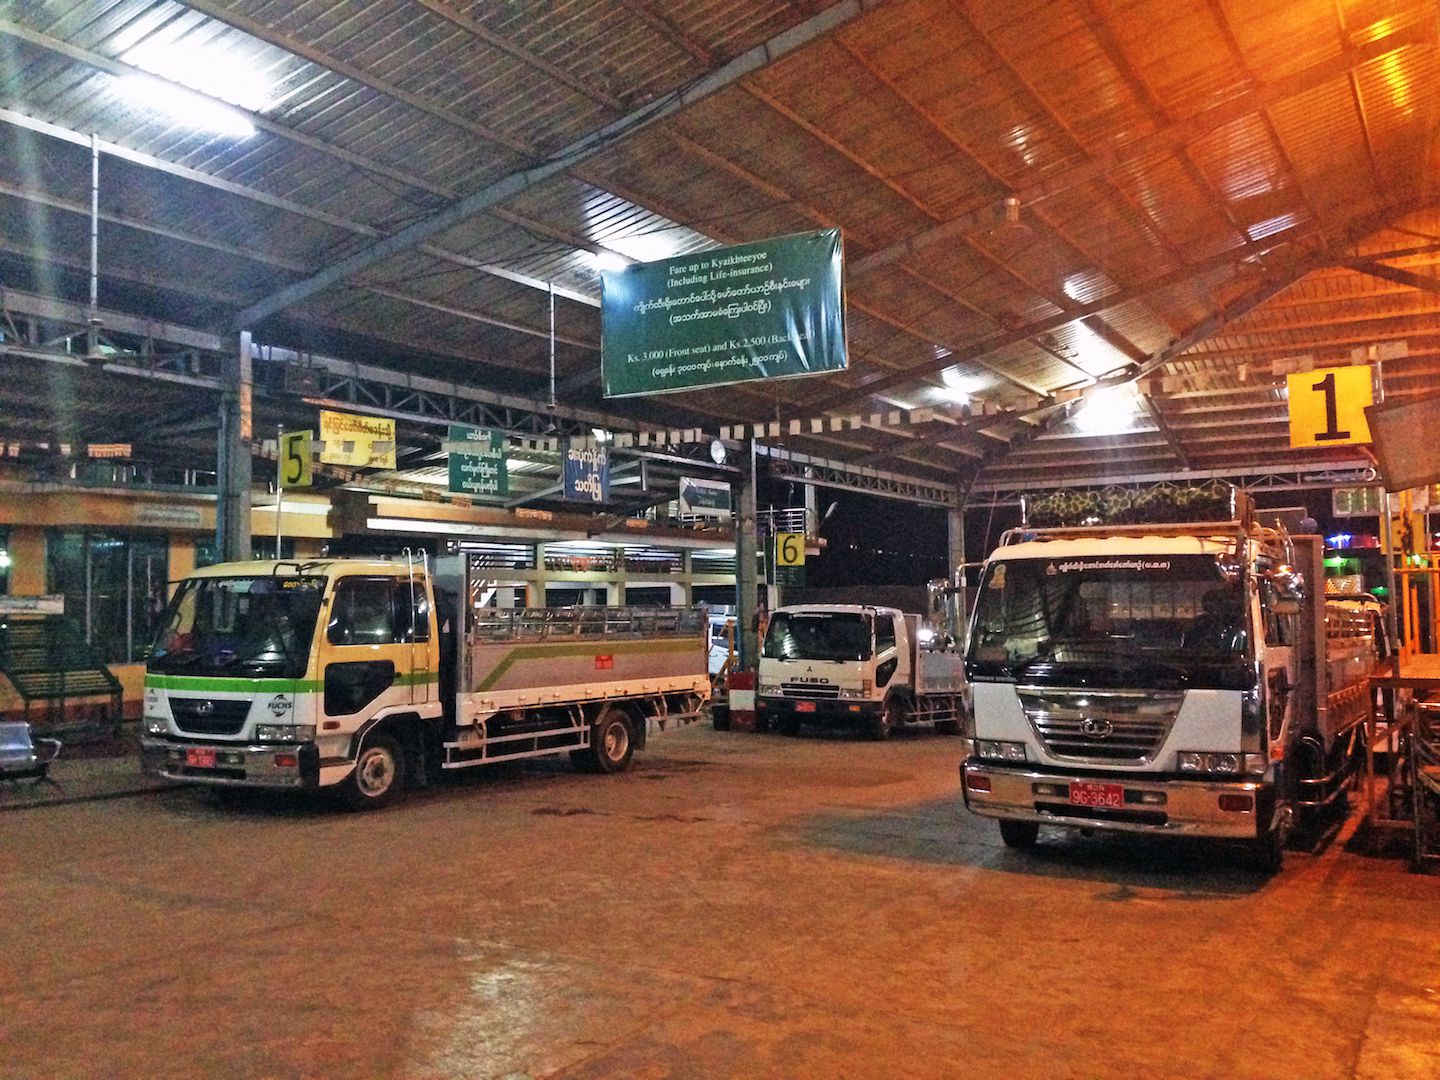 Truck station in Kinpun, Myanmar